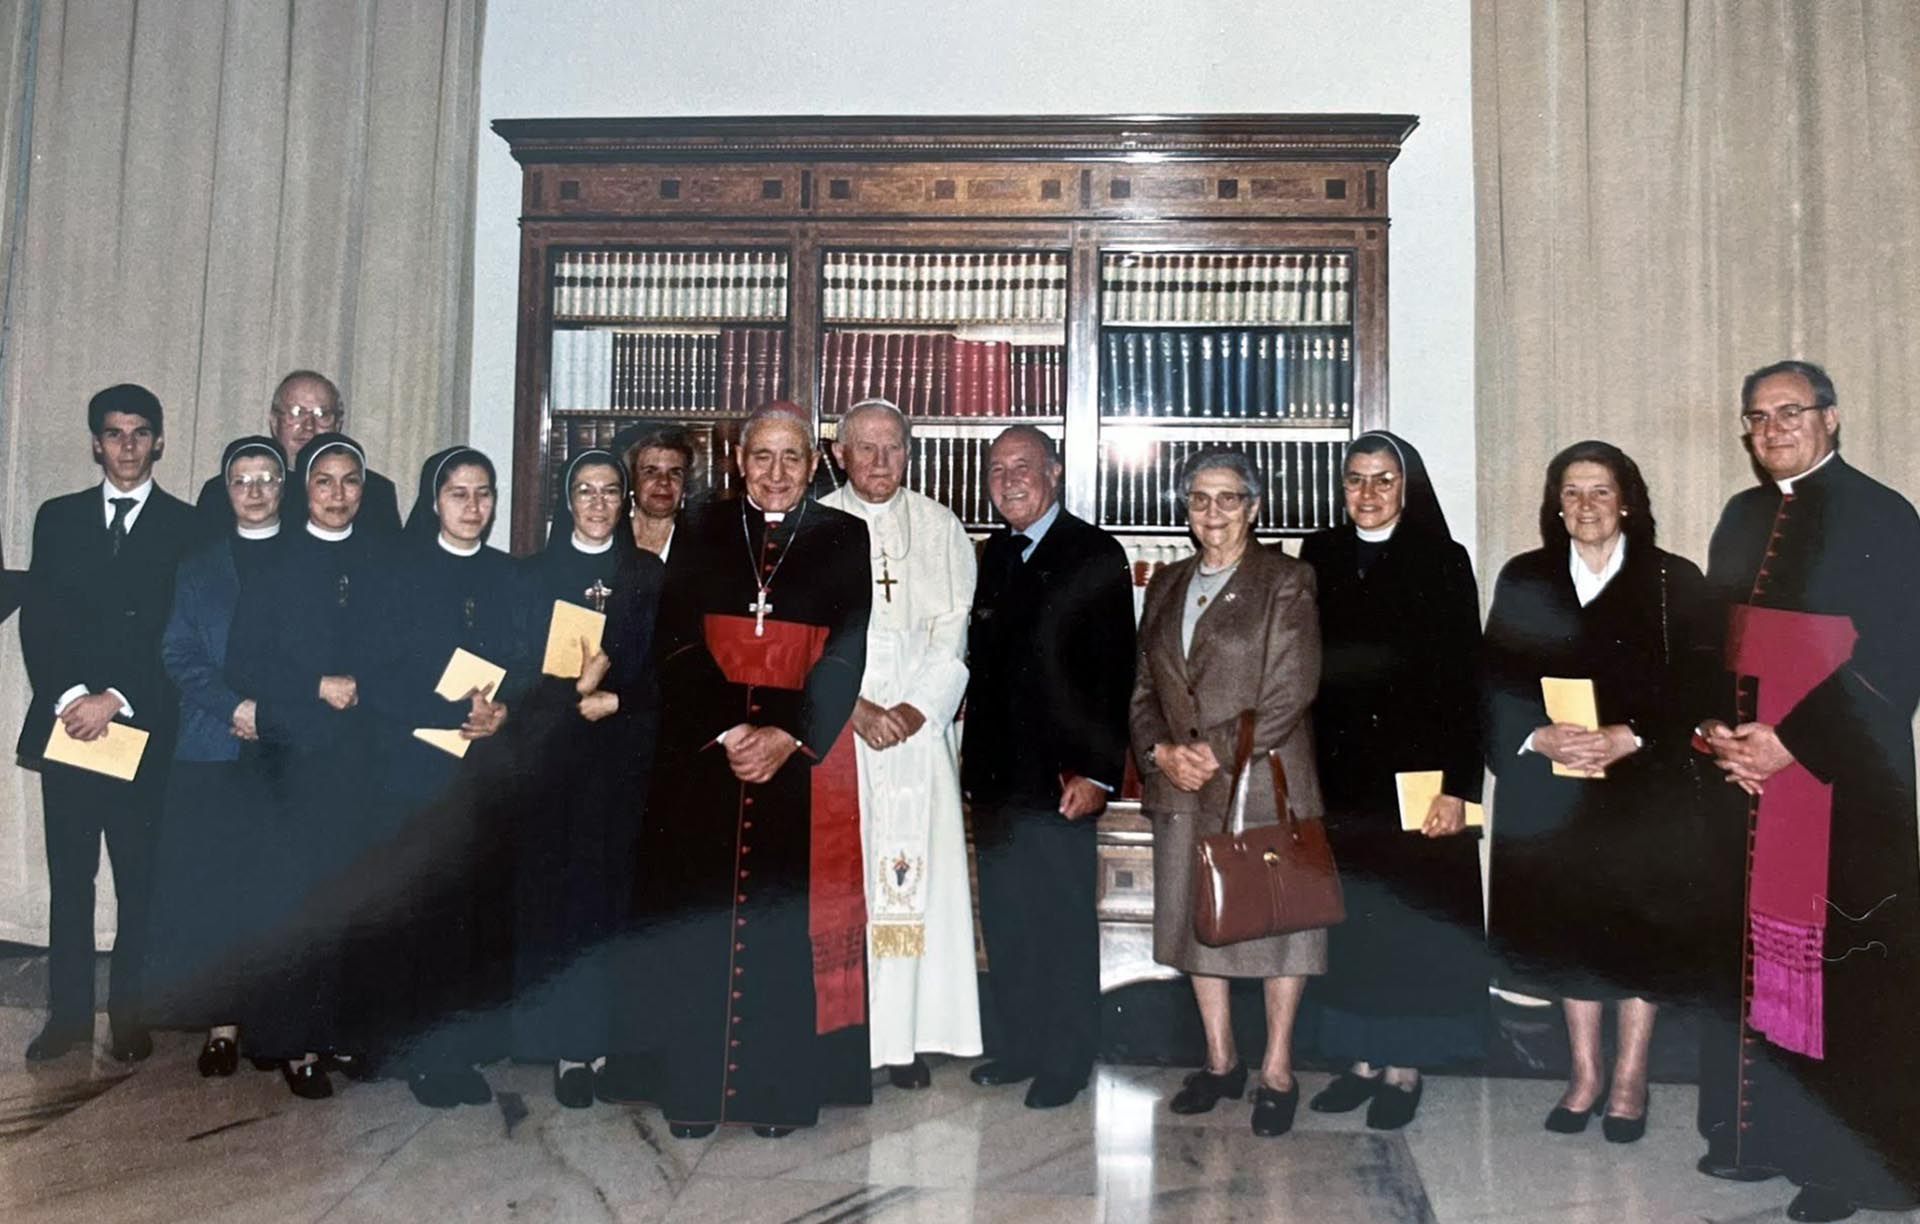 Maxi Trusso (el primero en la imagen) en sus tiempos de trabajo en el Museo del Vaticano (1993), junto al Papa Juan Pablo II, Monseñor Sandri, el Cardenal Pironio, y las monjas y laicos de la congregación